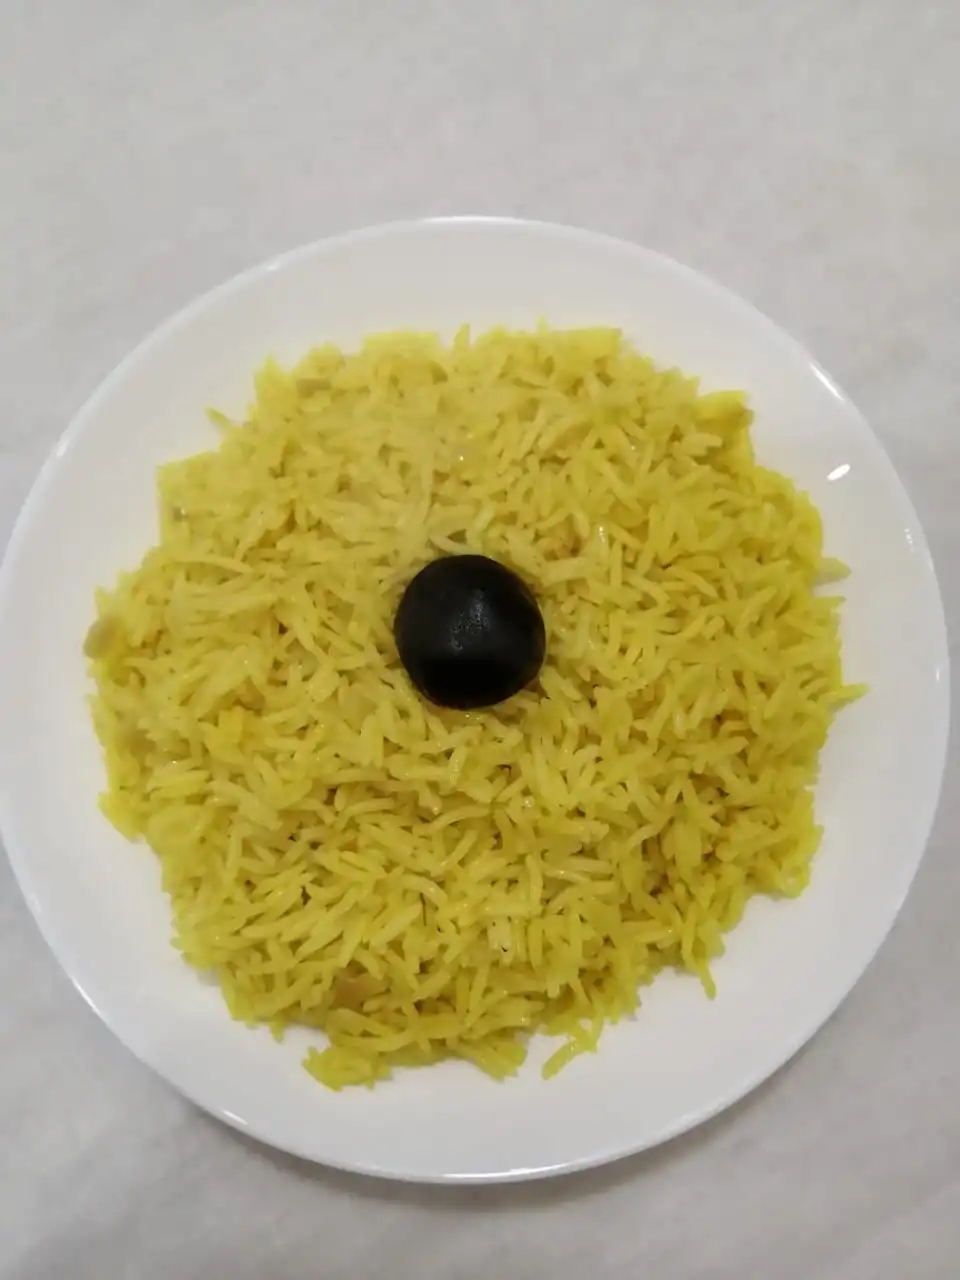 طريقة عمل الأرز البسمتي الأصفر